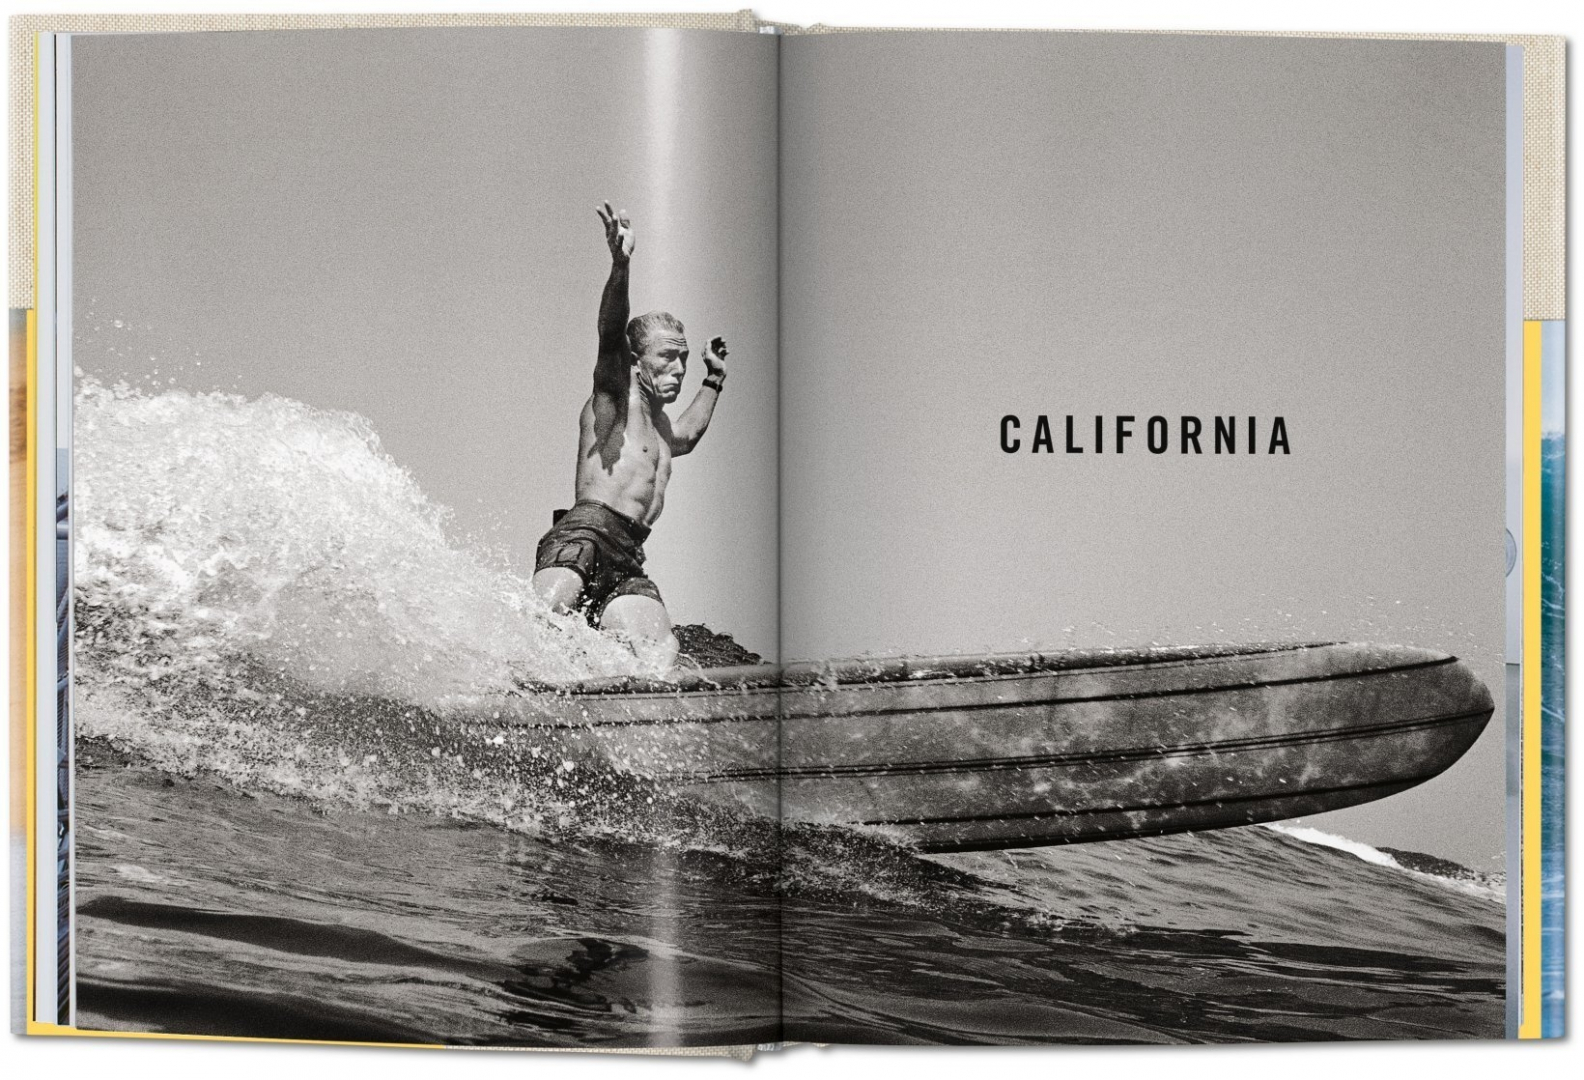 Livre LeRoy Grannis Surf Photography - TASCHEN